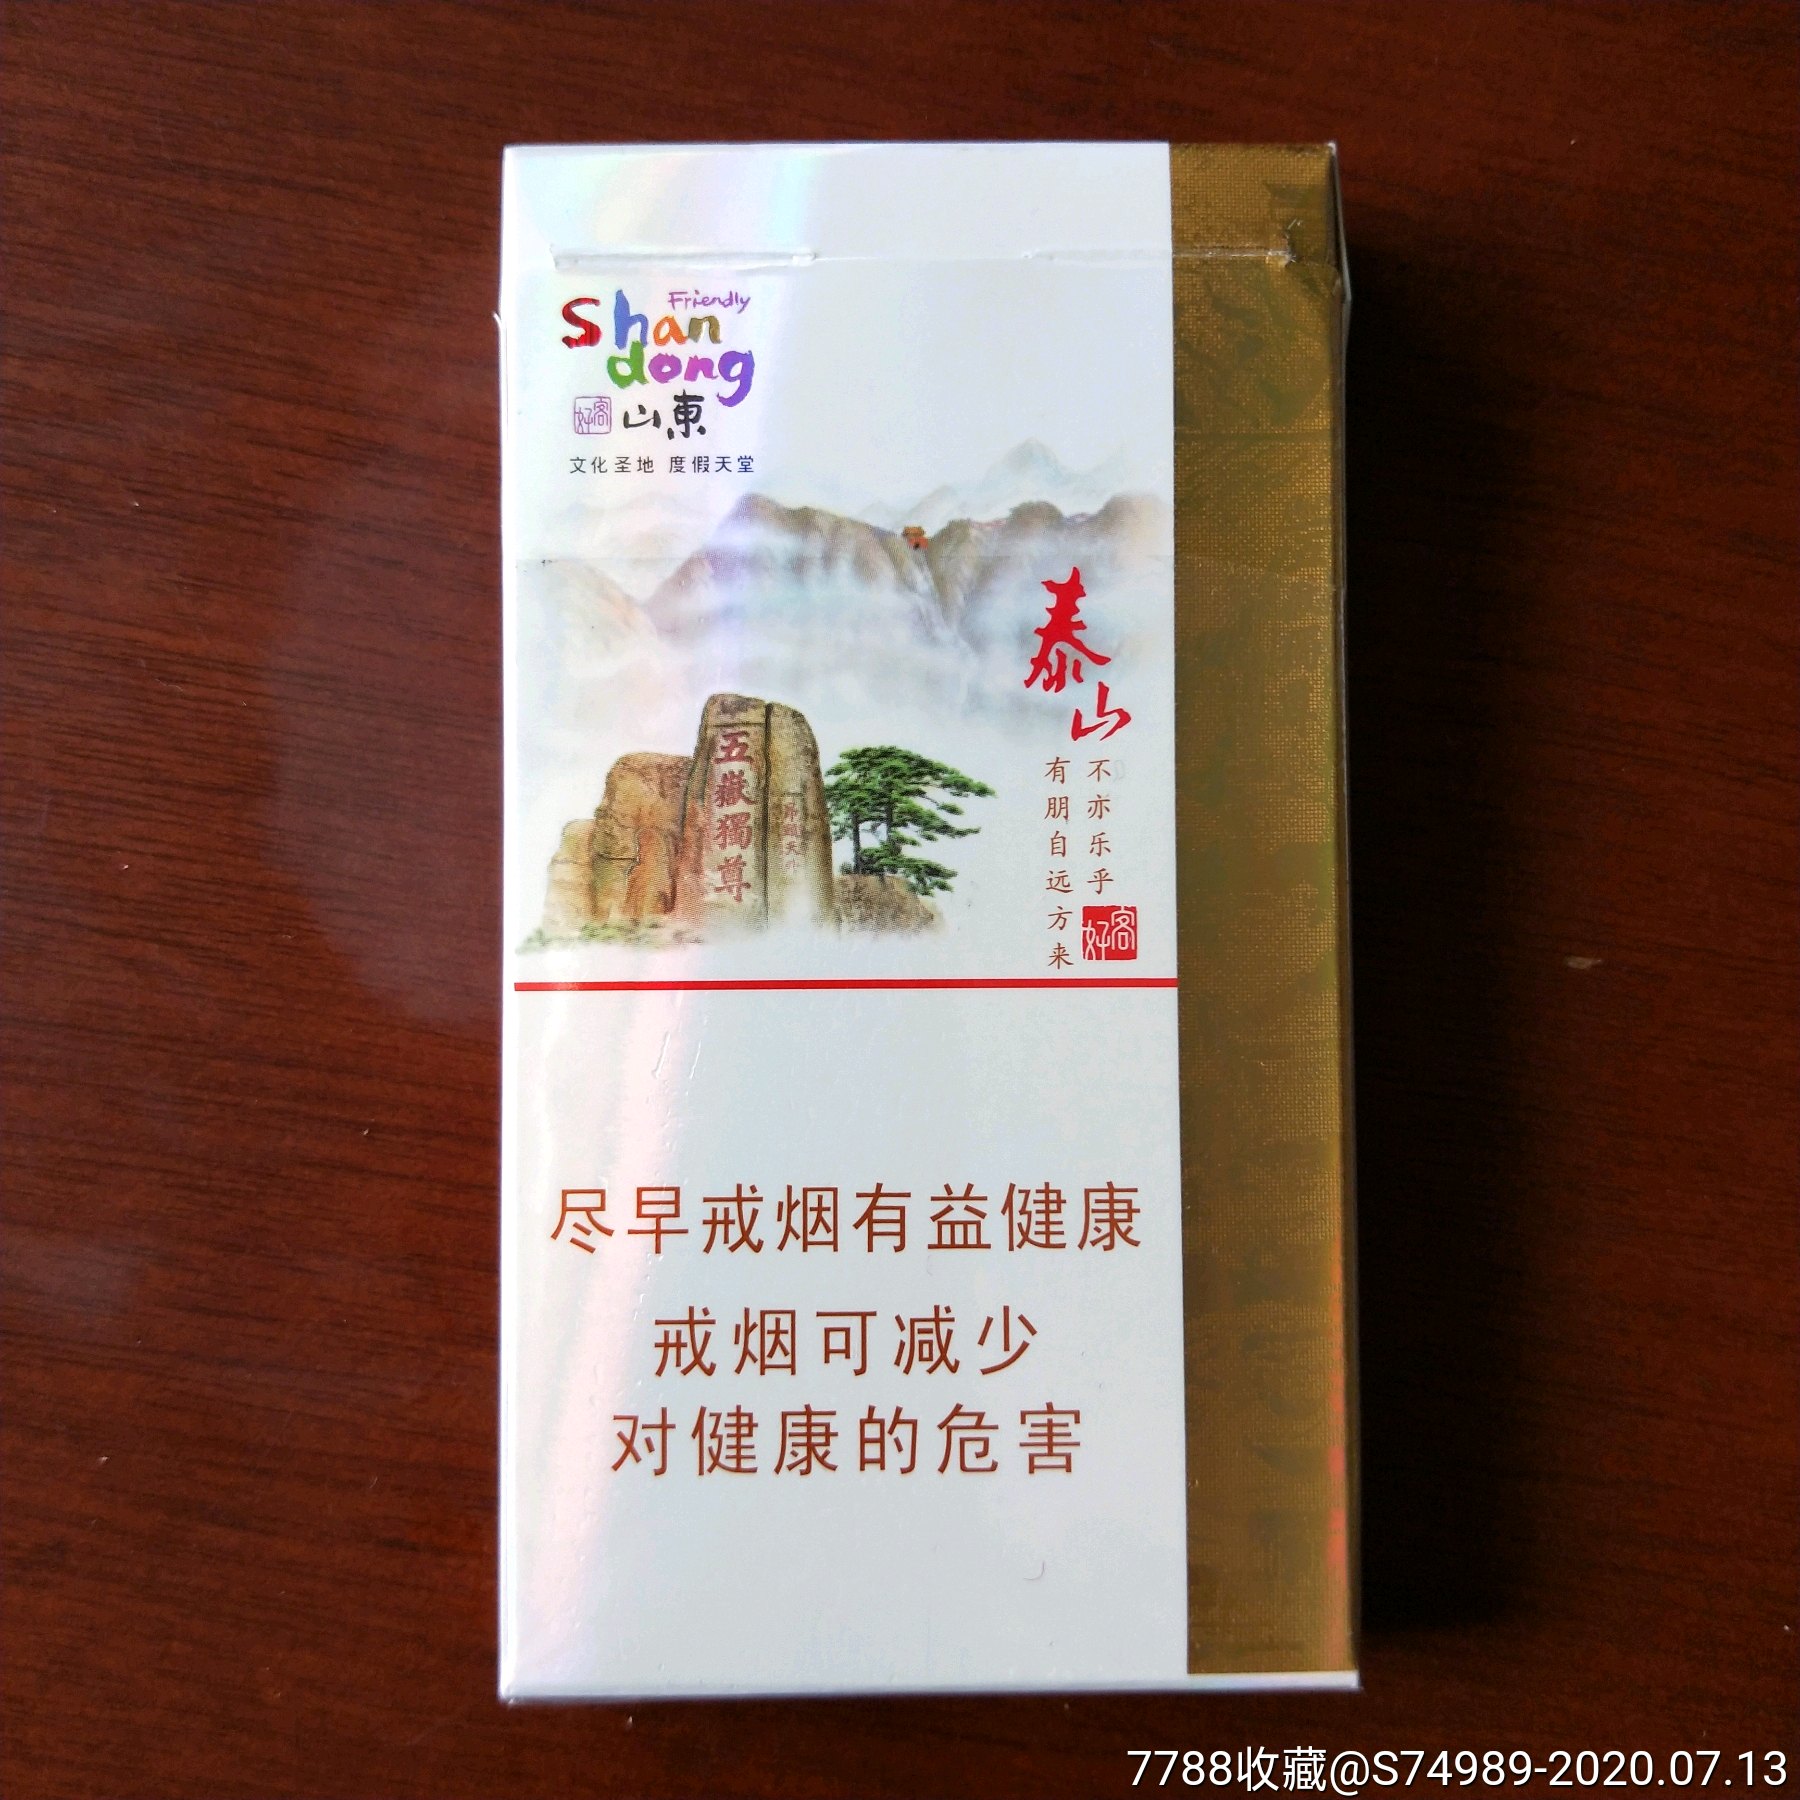 烟标烟盒收藏泰山(好客)细枝卷烟条形码:6901028154147